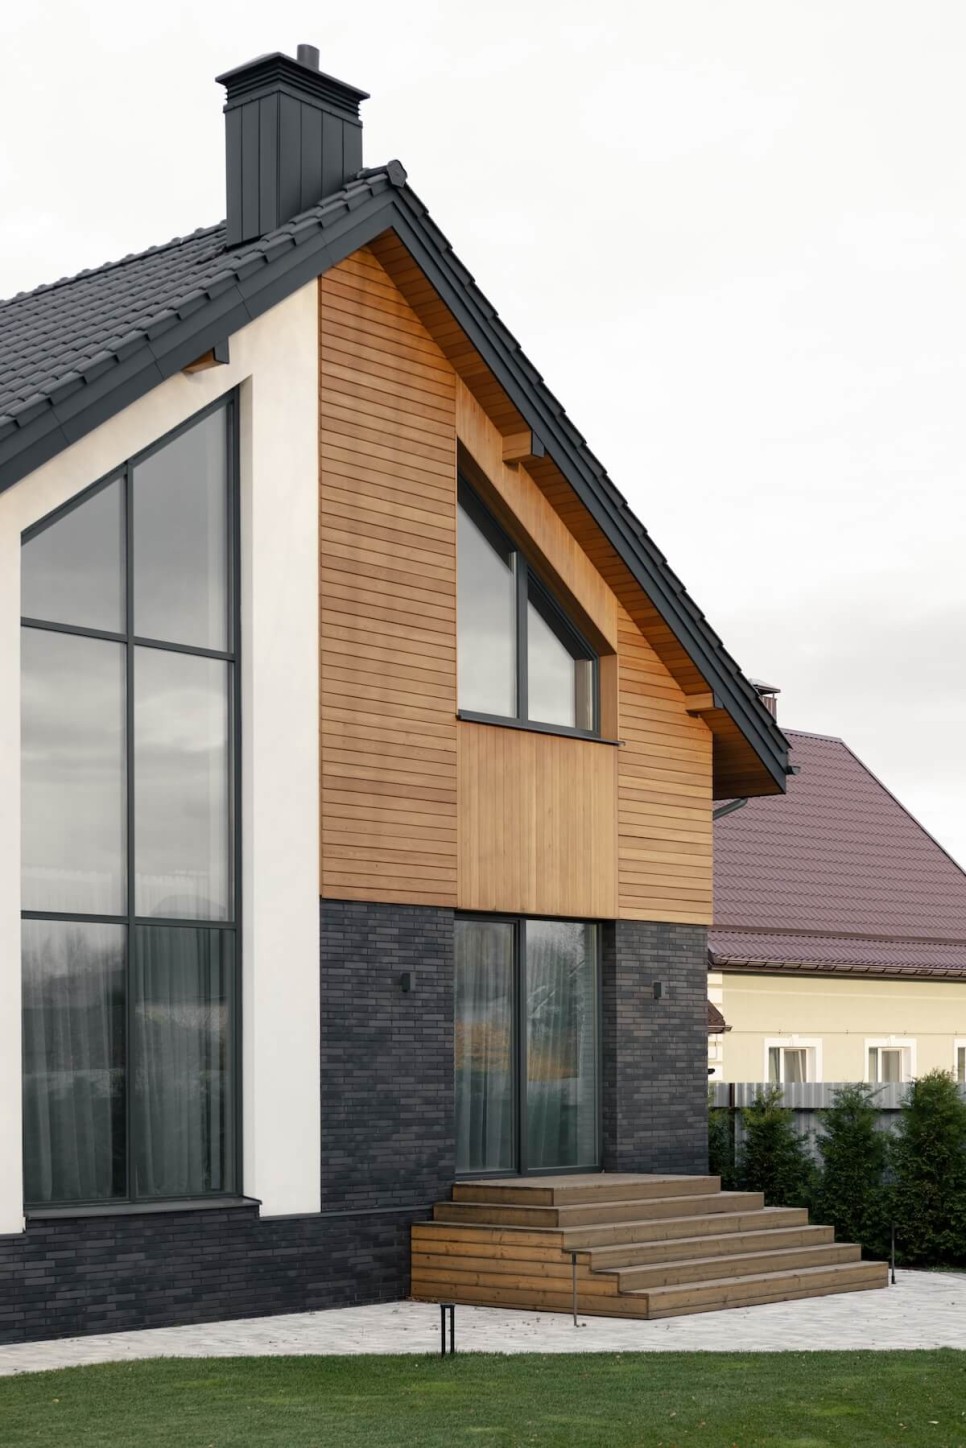 목가적인 자연스러움과 도시적인 모던함이 조화를 이룬 교외 주택, Wood & Air House by Skar Design